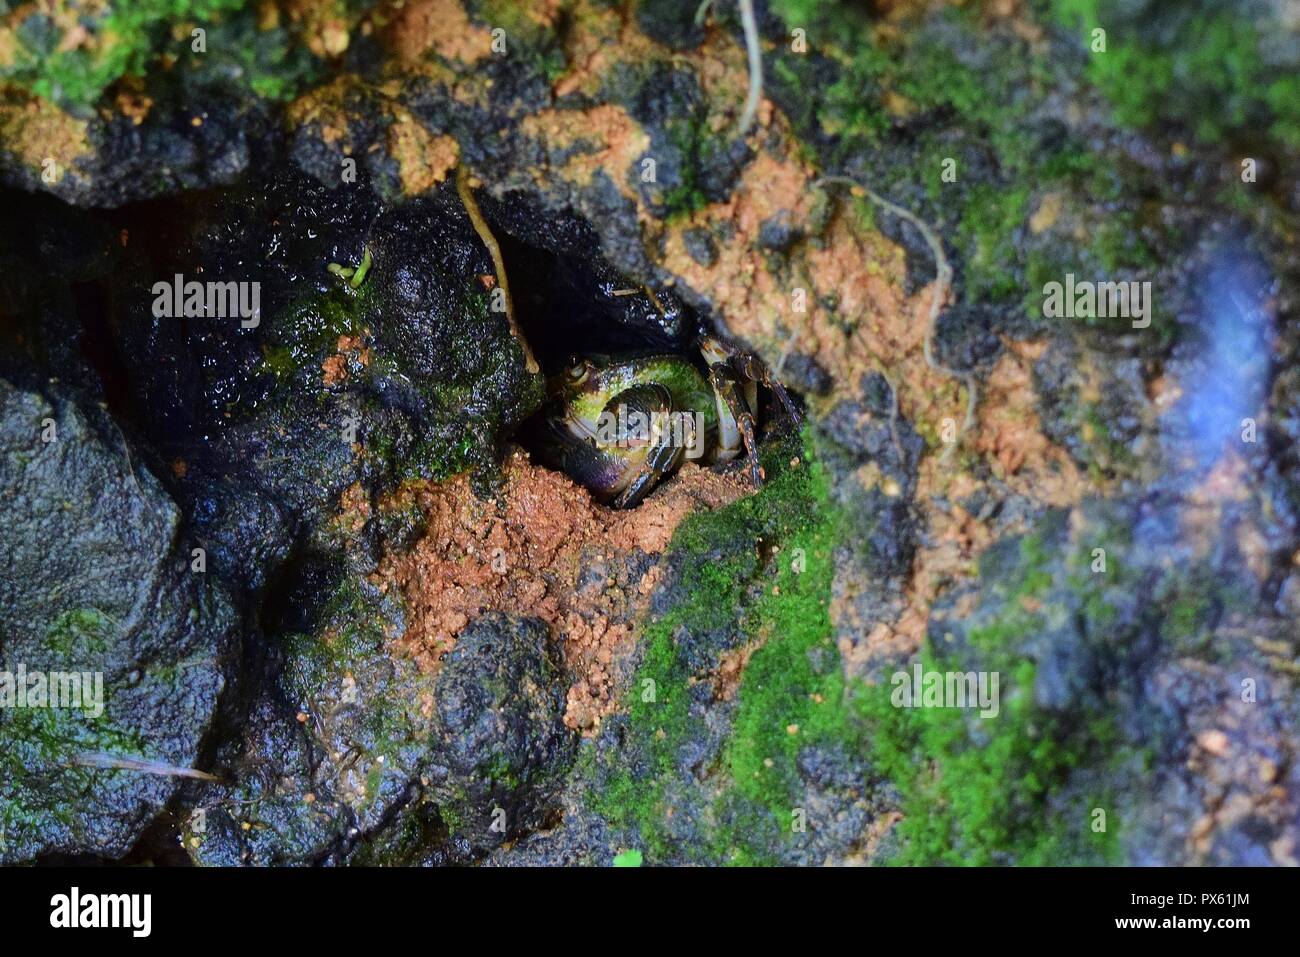 Maltese crabe d'eau douce, Potamon fluviatile, nid, terrier boueux griffes pour défense contre les intrus. menacé crabe rares trouvés sur les îles maltaises Banque D'Images